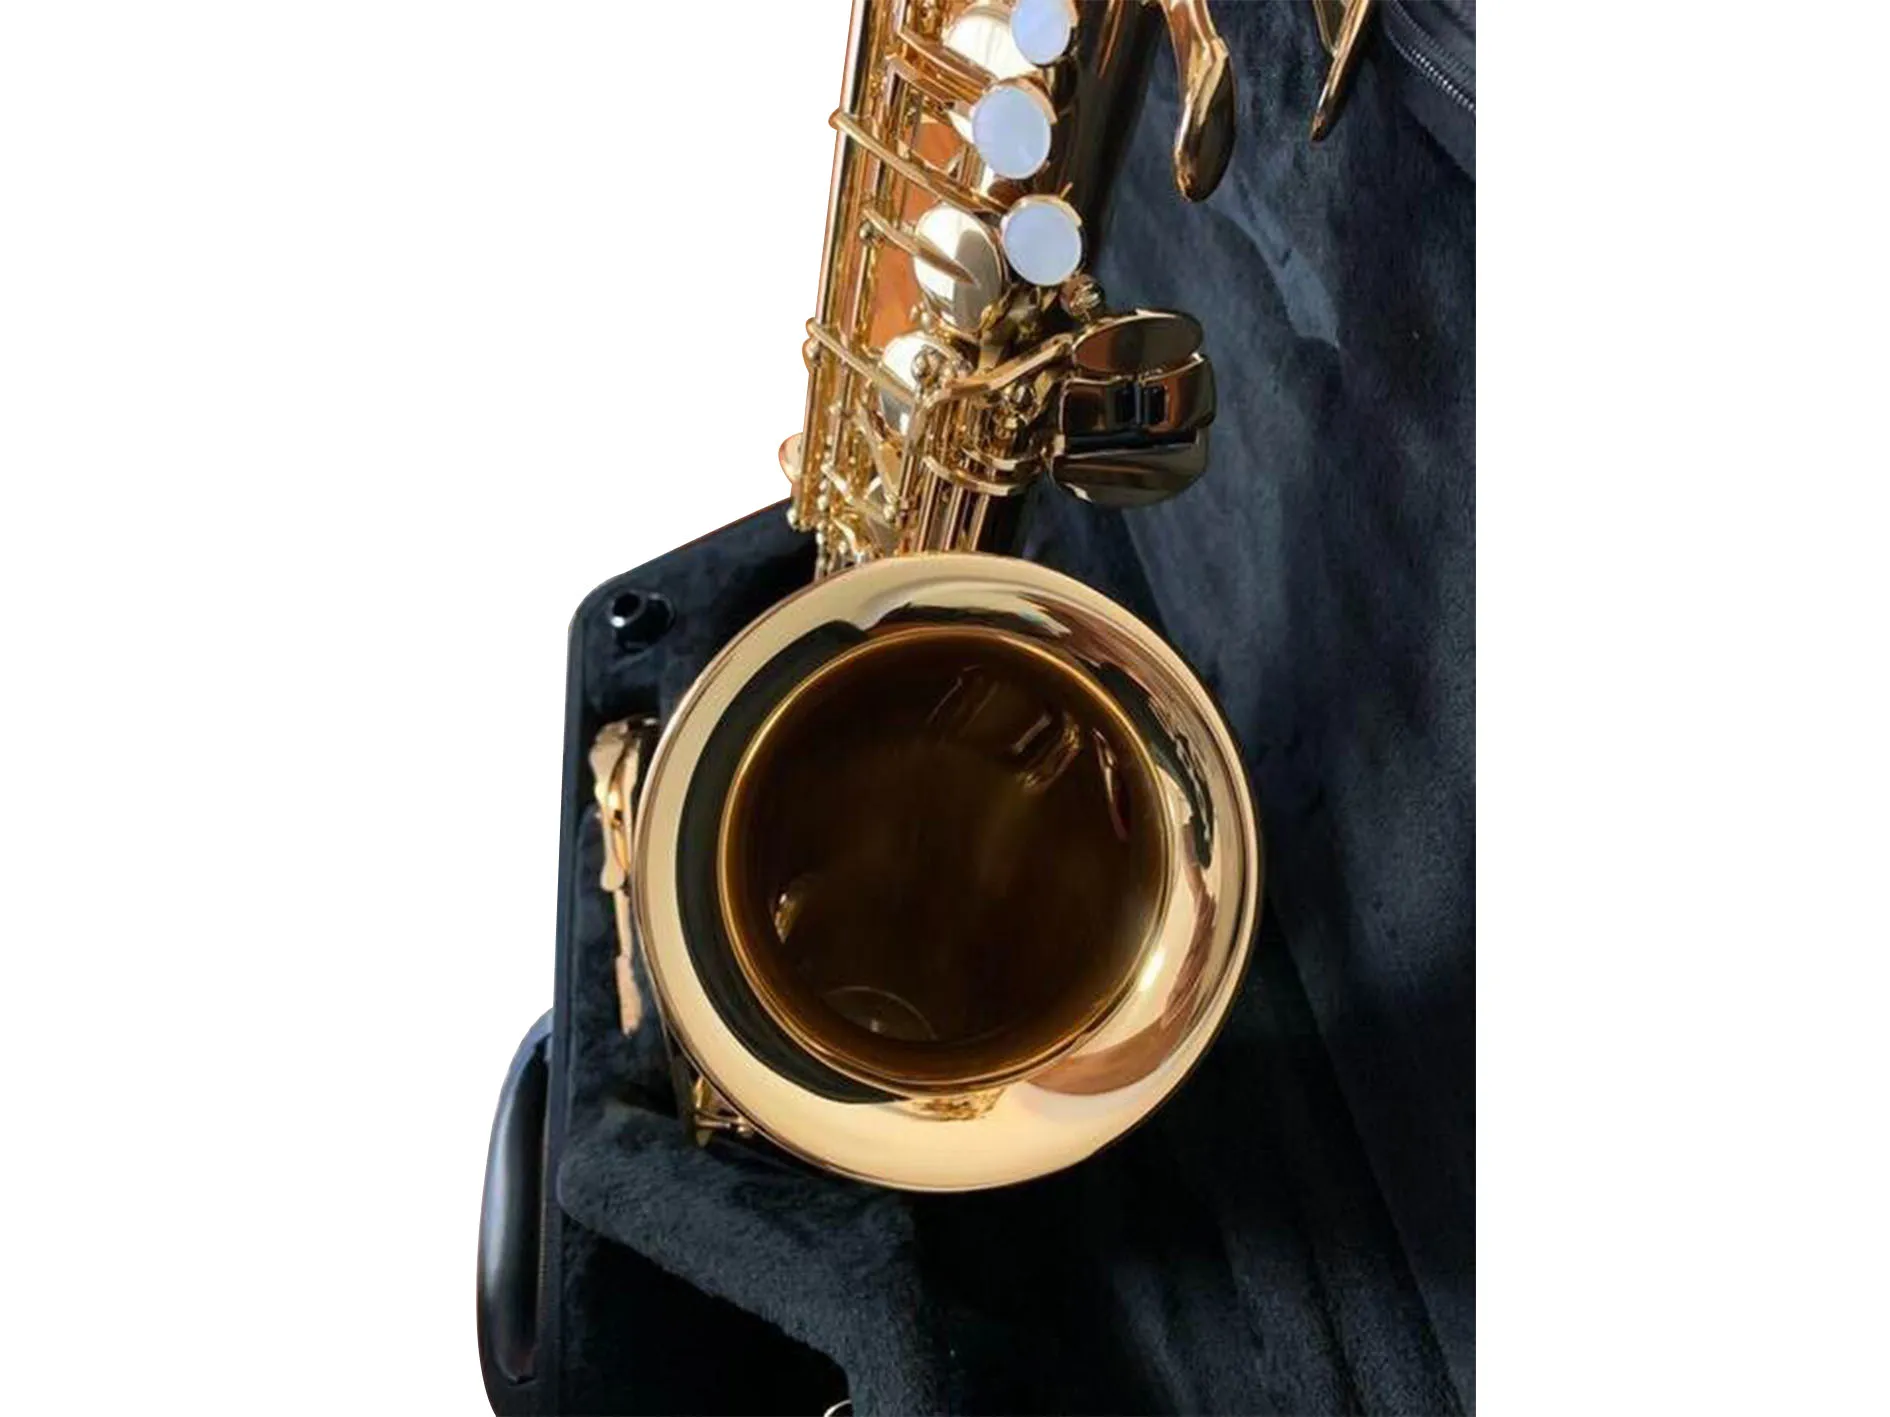 YAS-280 Alto Saxophones الموسيقية الآلات الموسيقية